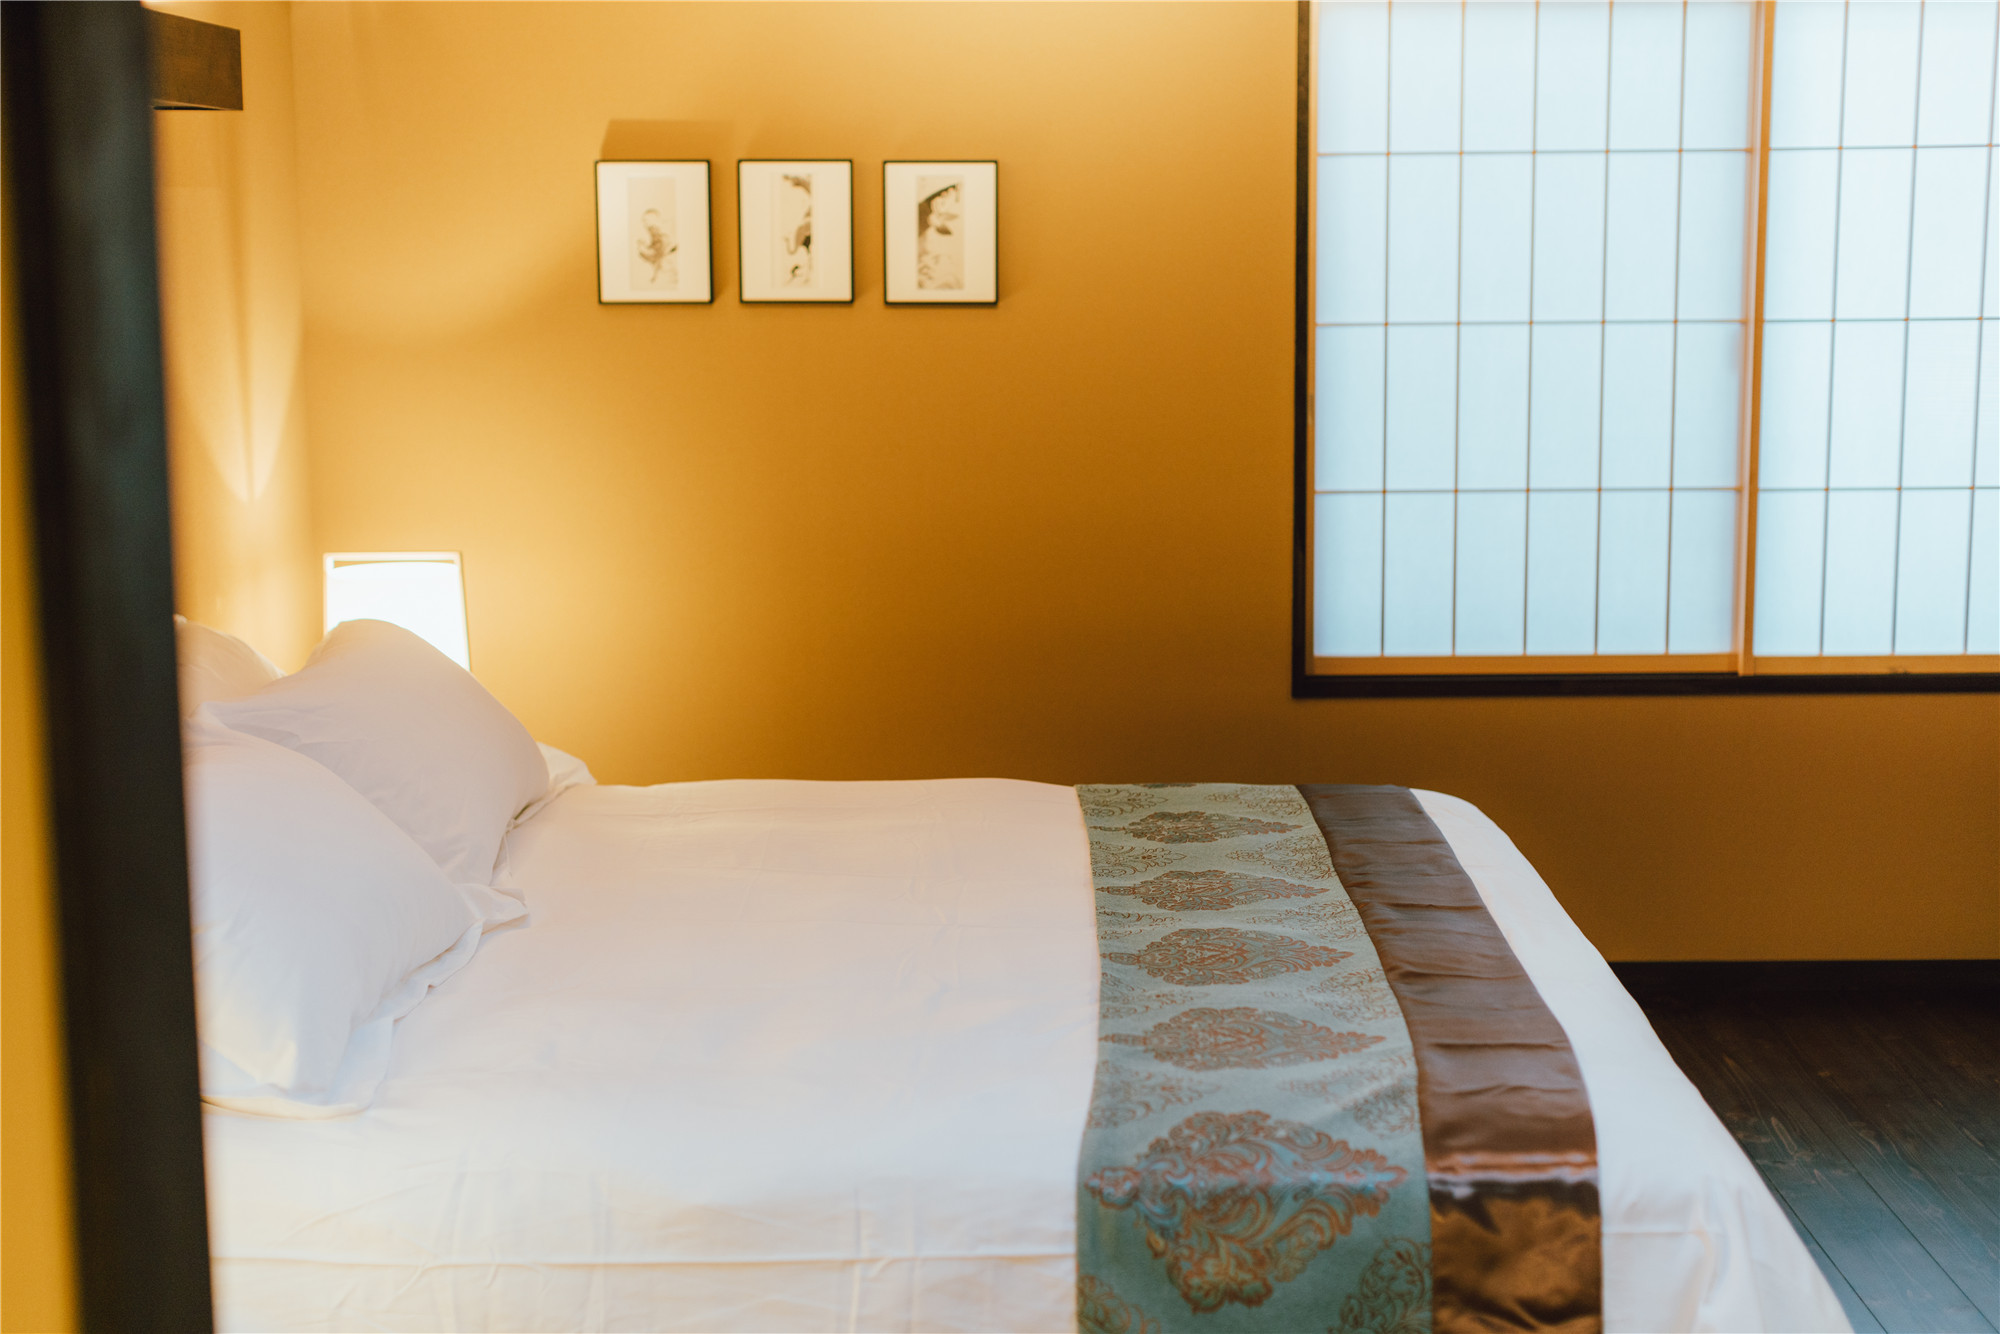 世界の一流ホテルでも採用されているベッドと寝具で旅の疲れを癒し、ゆっくりお休みください